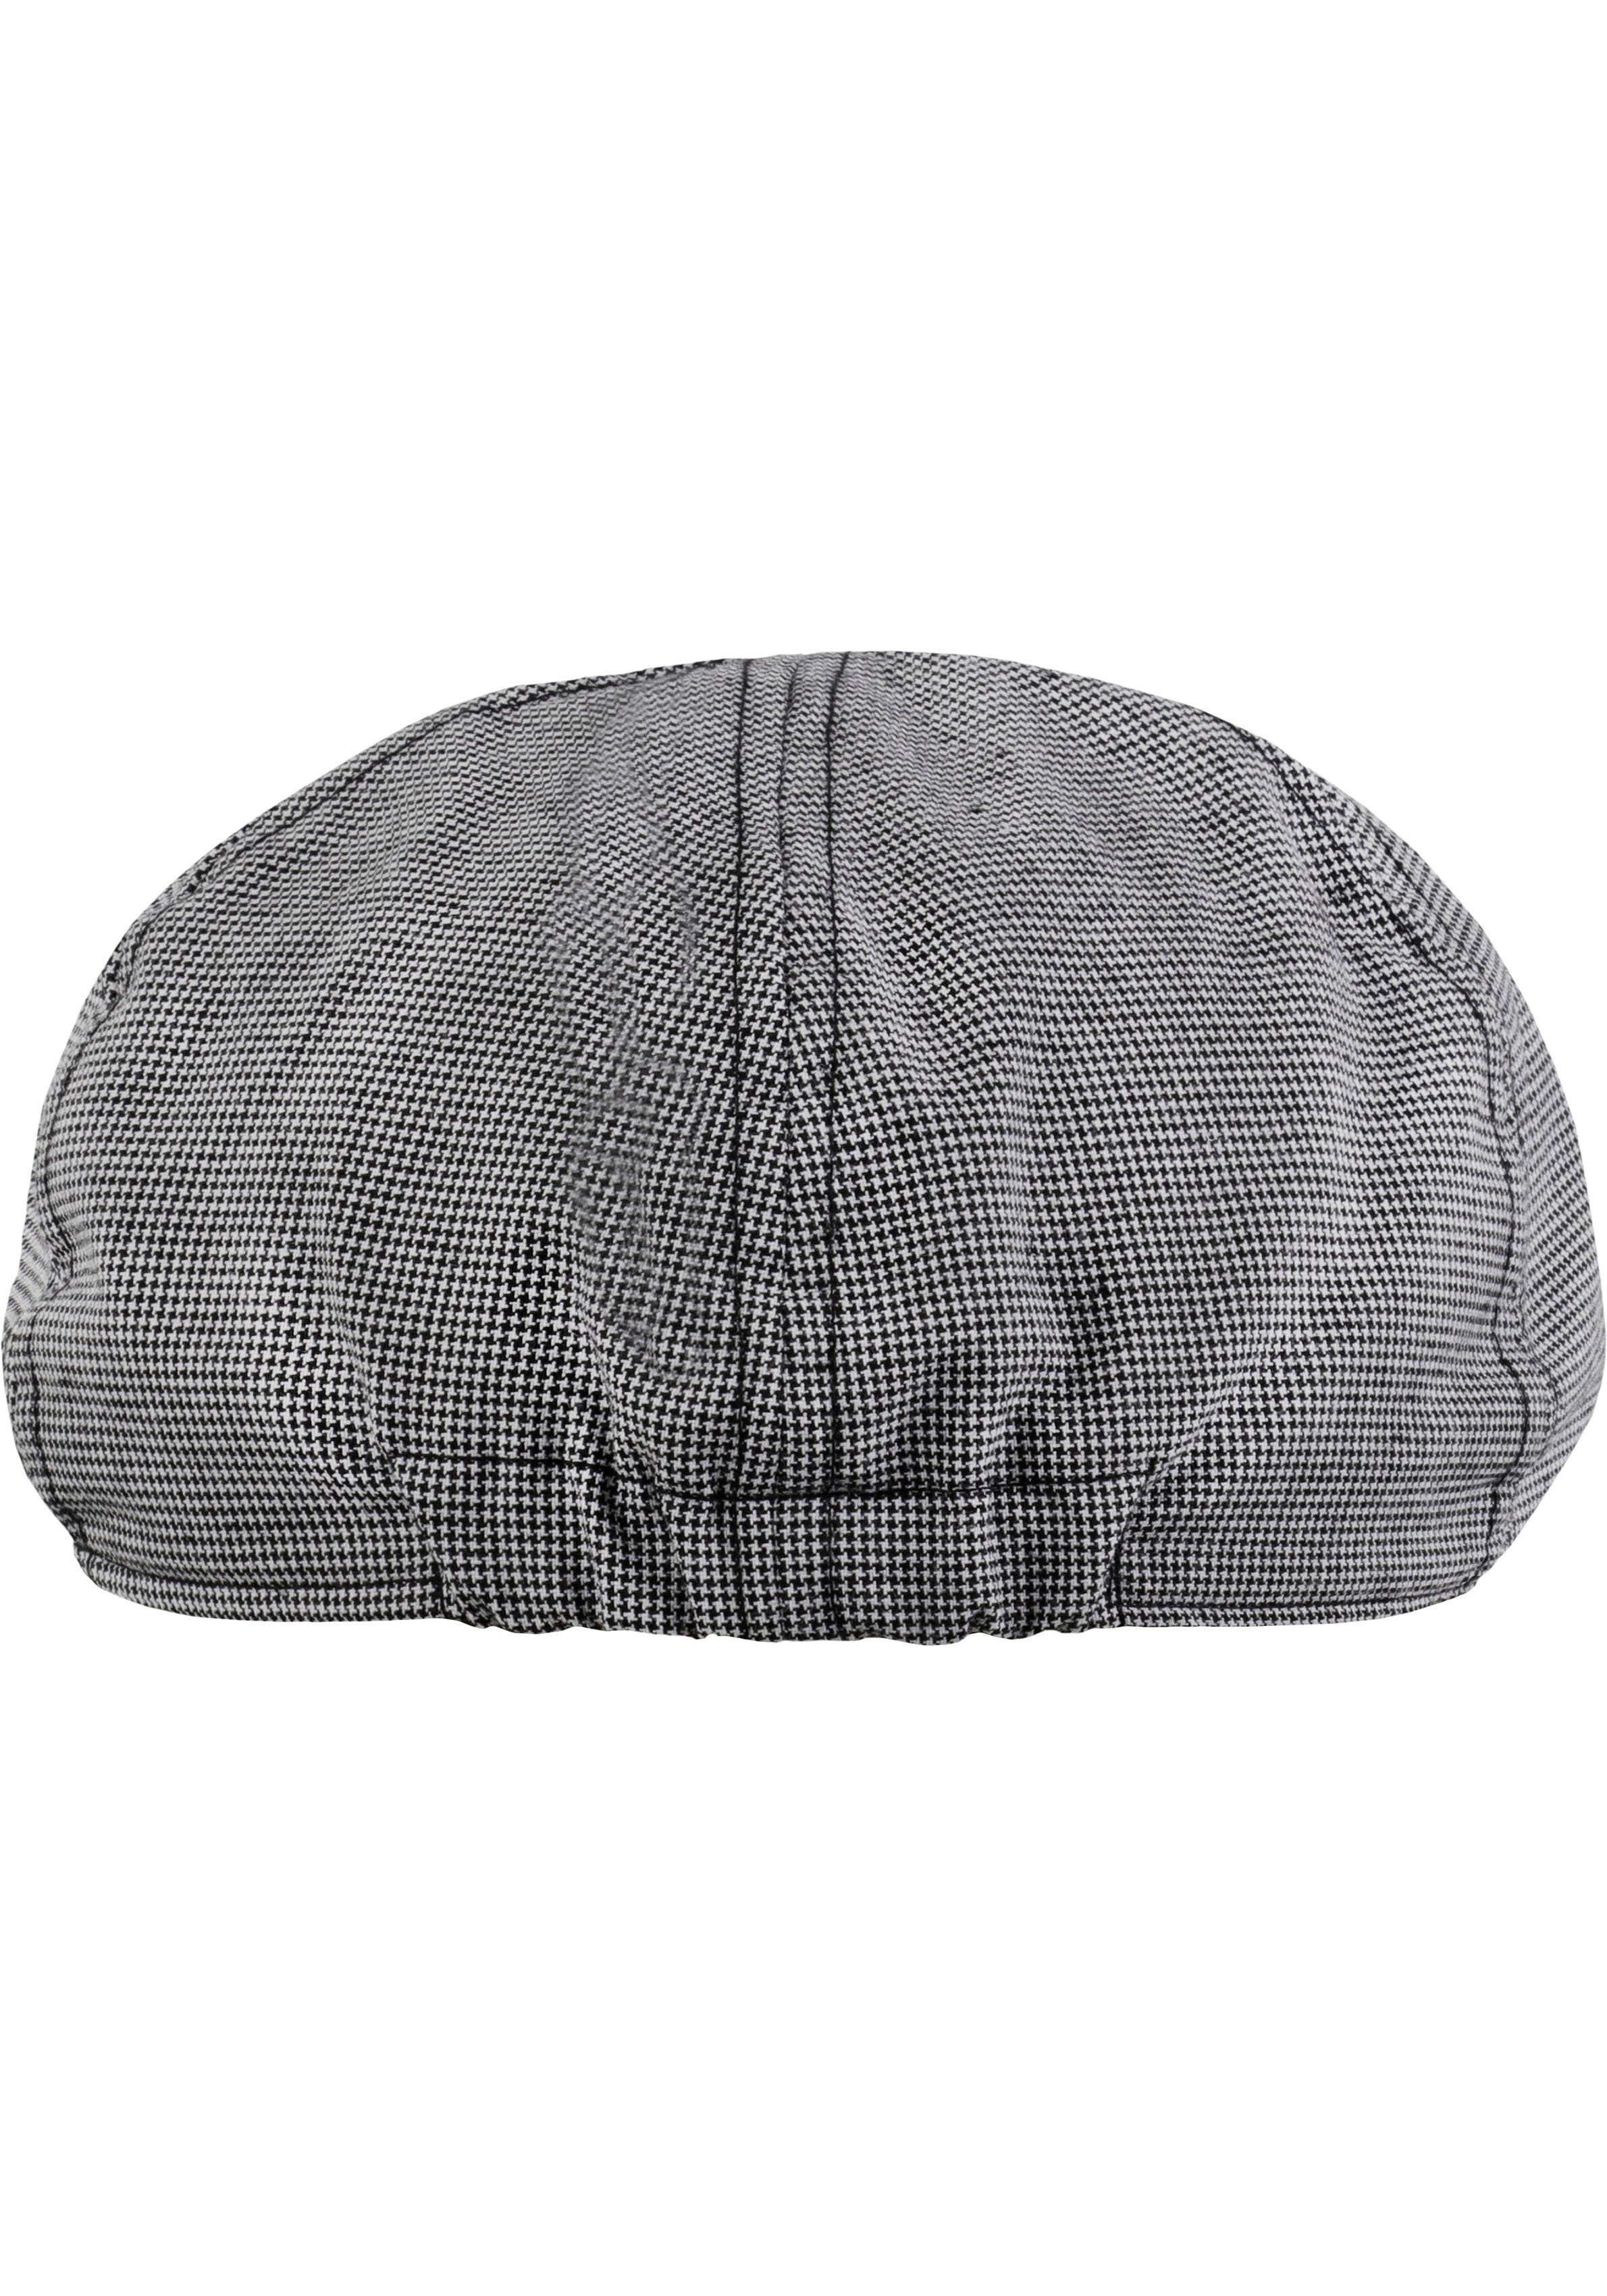 chillouts Schiebermütze Kyoto Hat Flat grey Cap mit Karomuster feinem